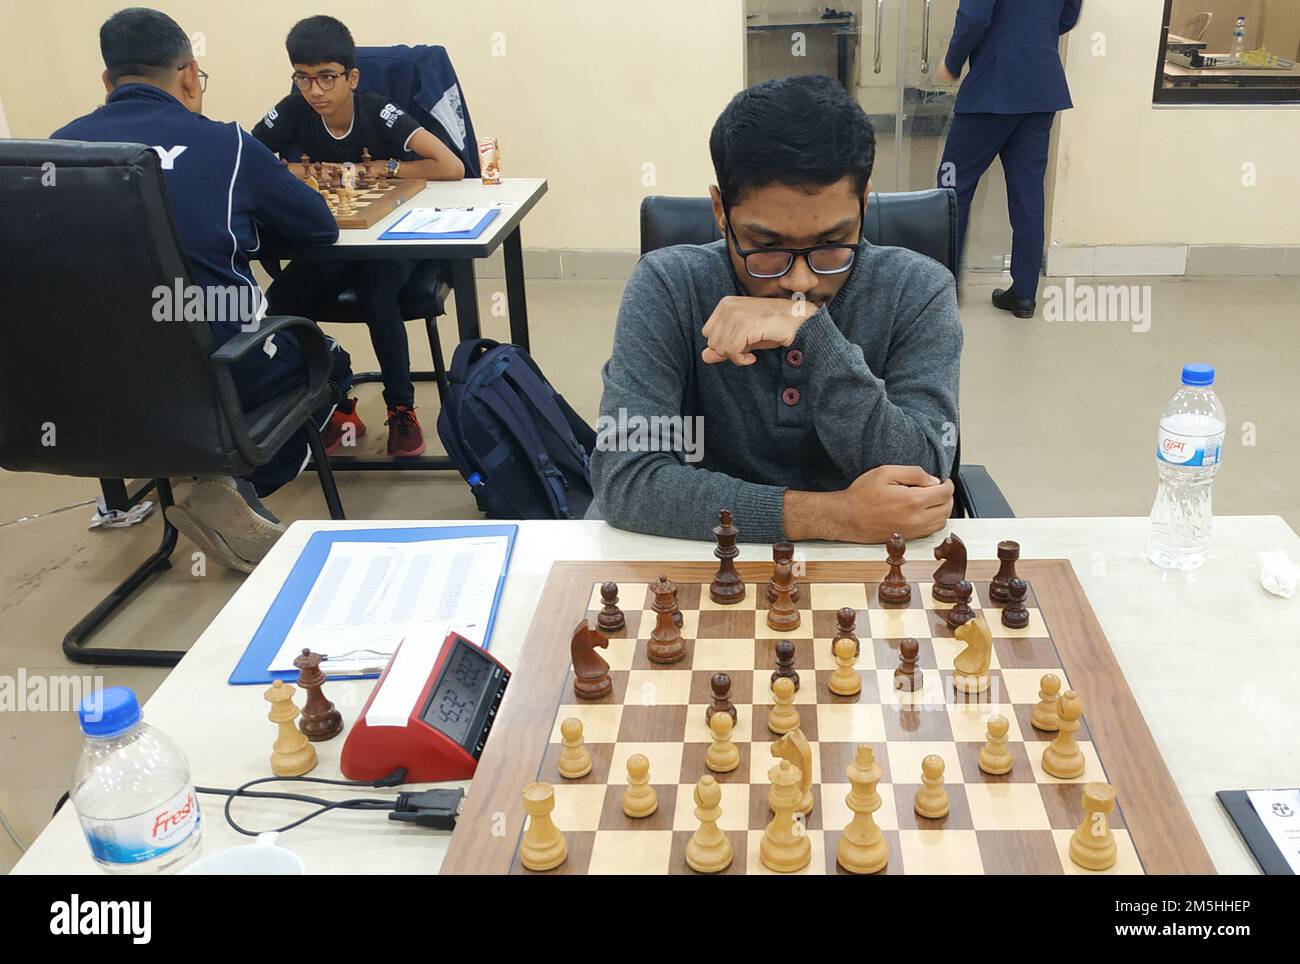 Pavlodar Chess: Bangladeshi IM Fahad Rahman finishes 14th